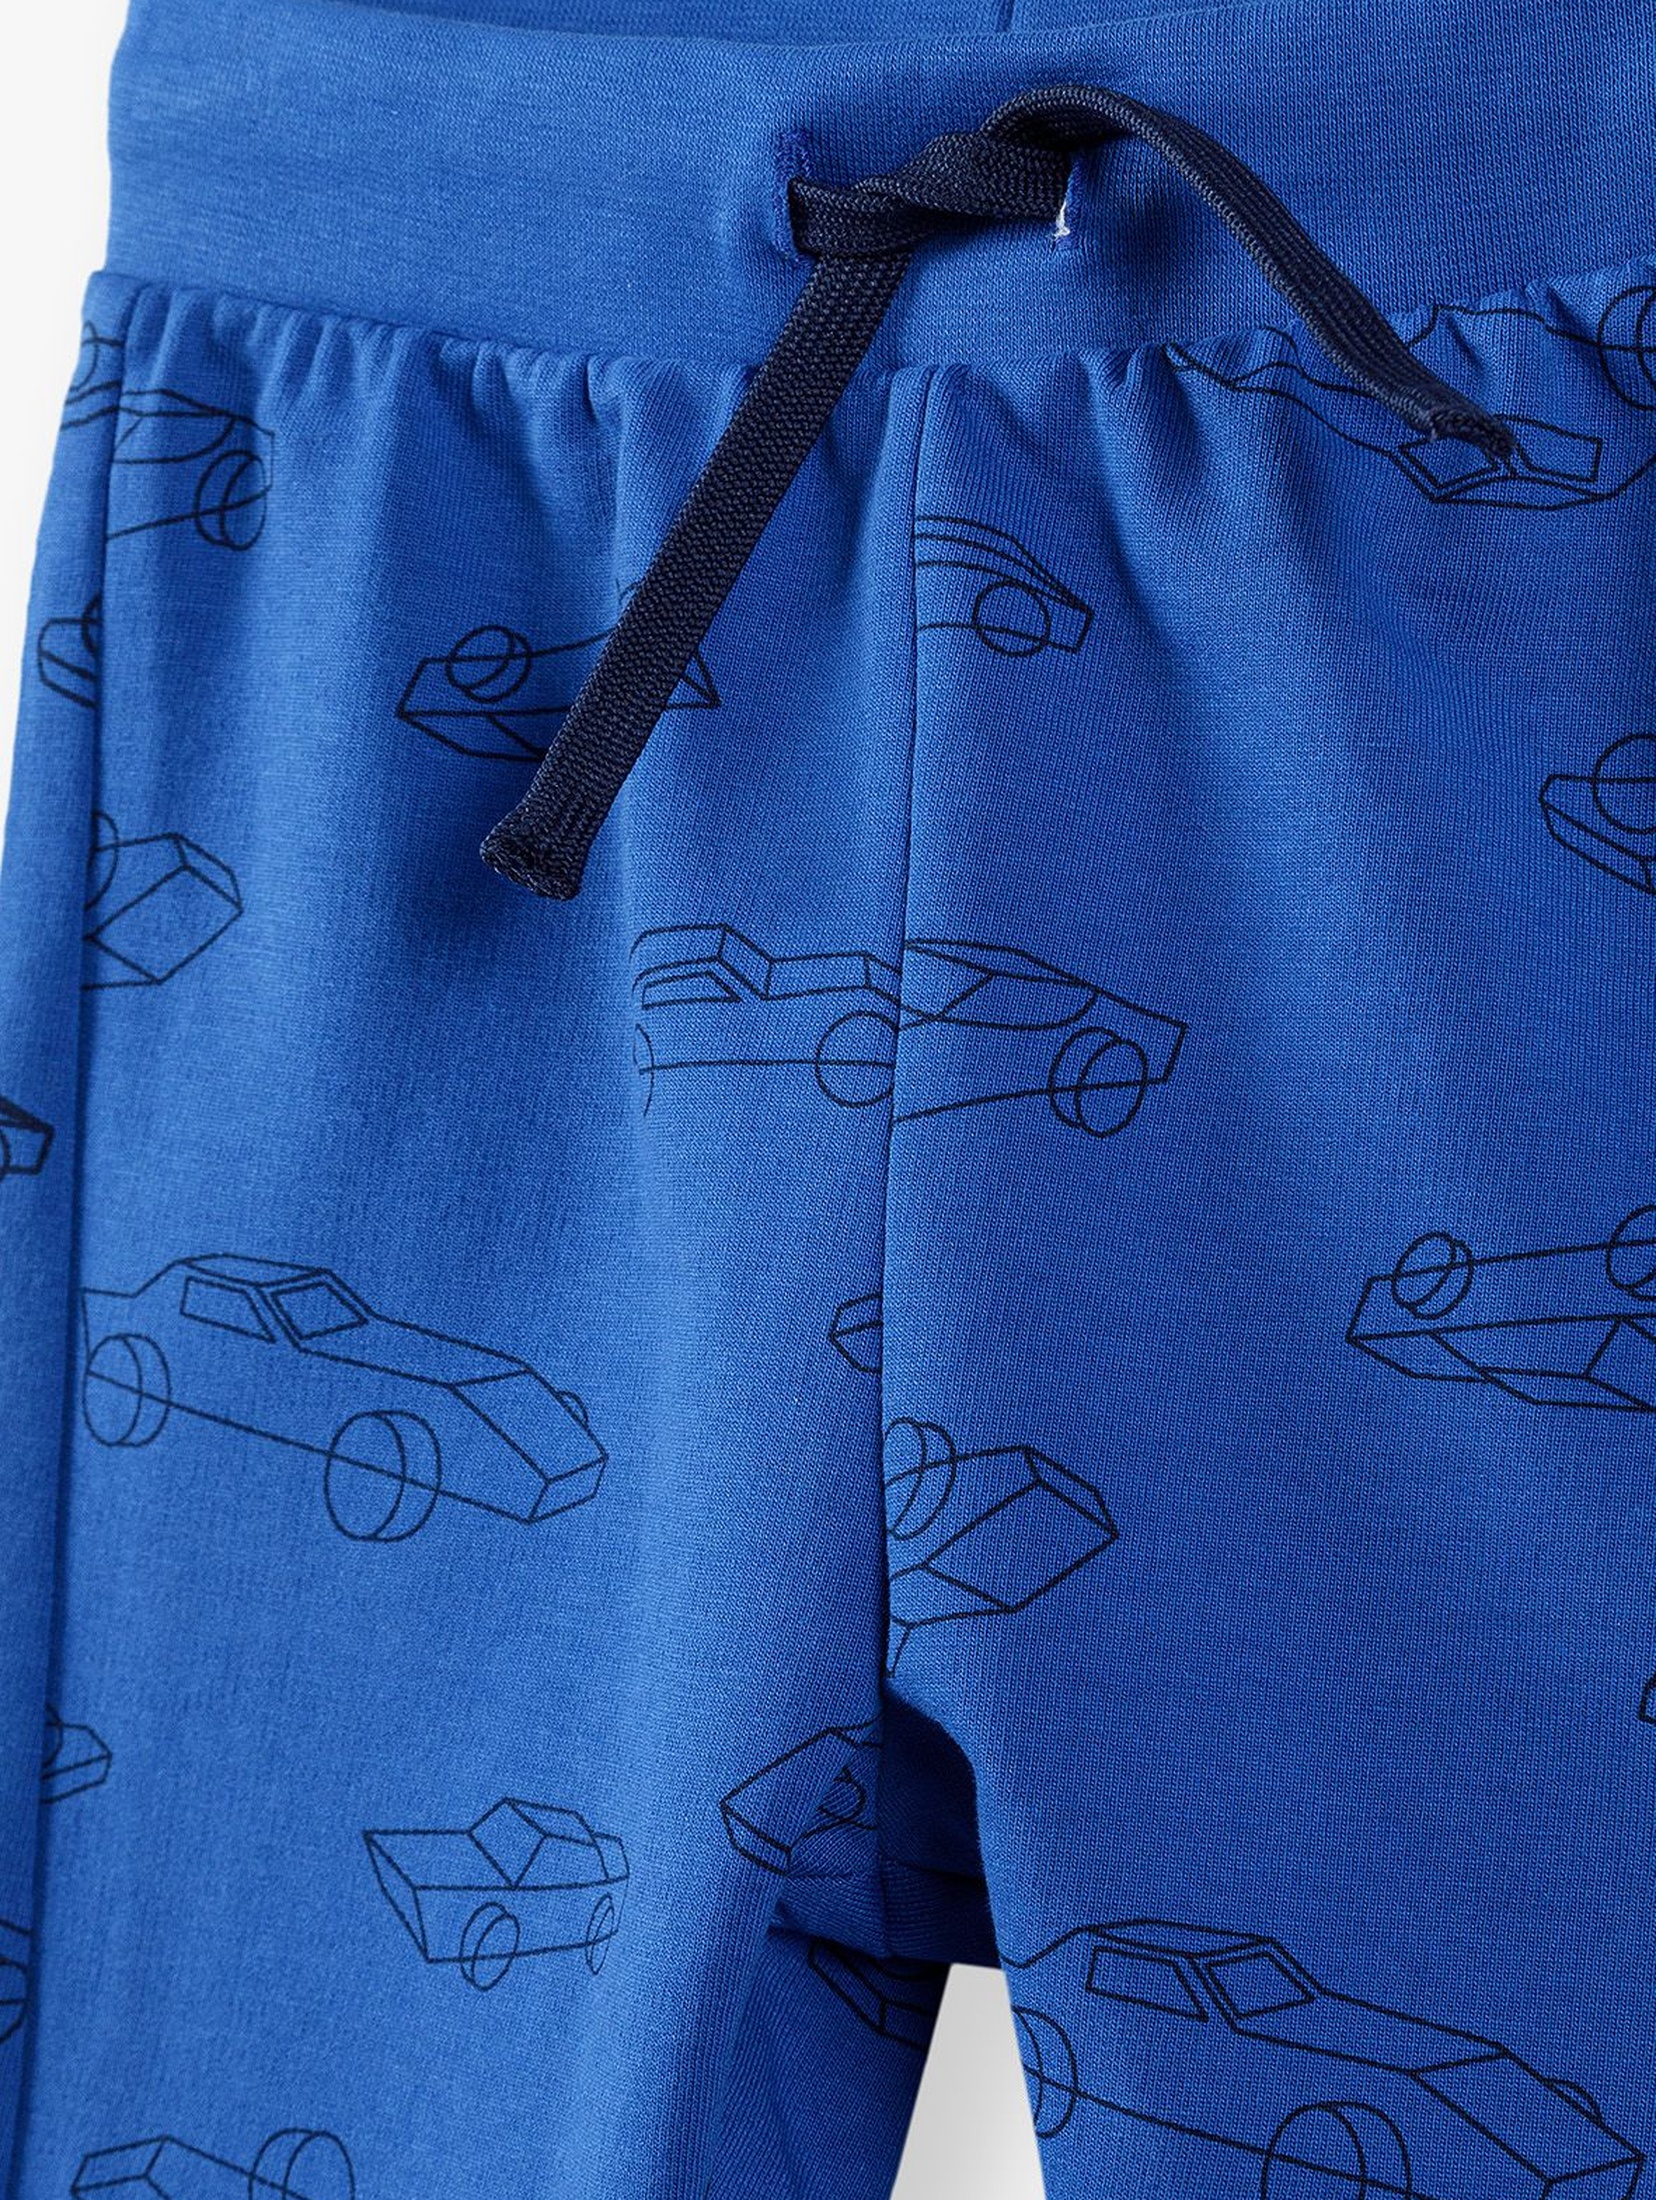 Bawełniane spodnie dresowe niebieskie w autka